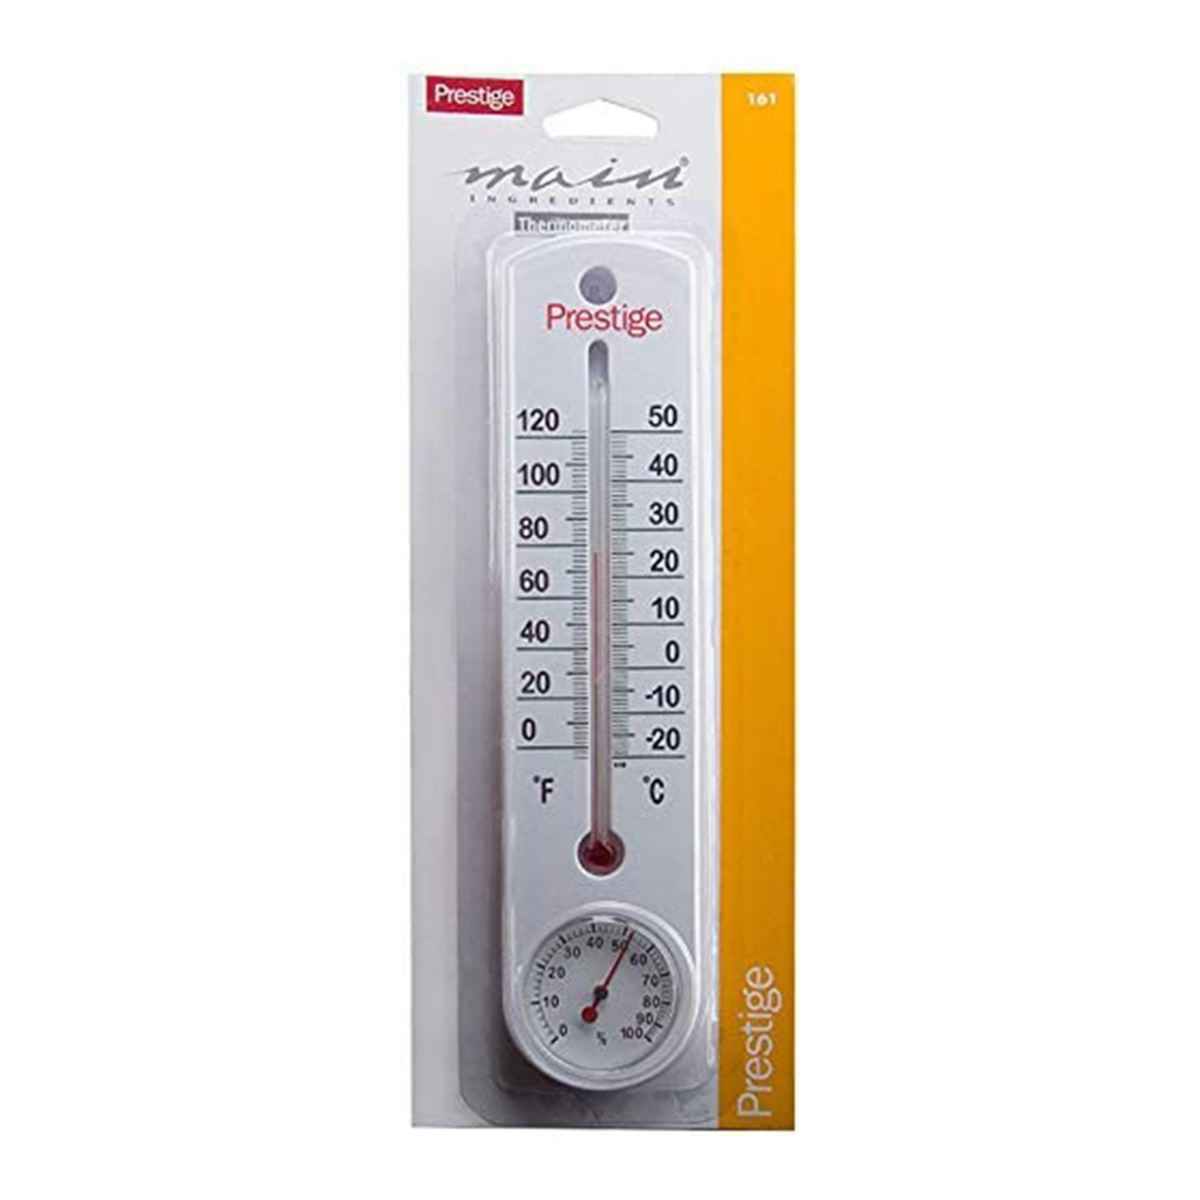 Prestige Bs Thermometer, White Pr161